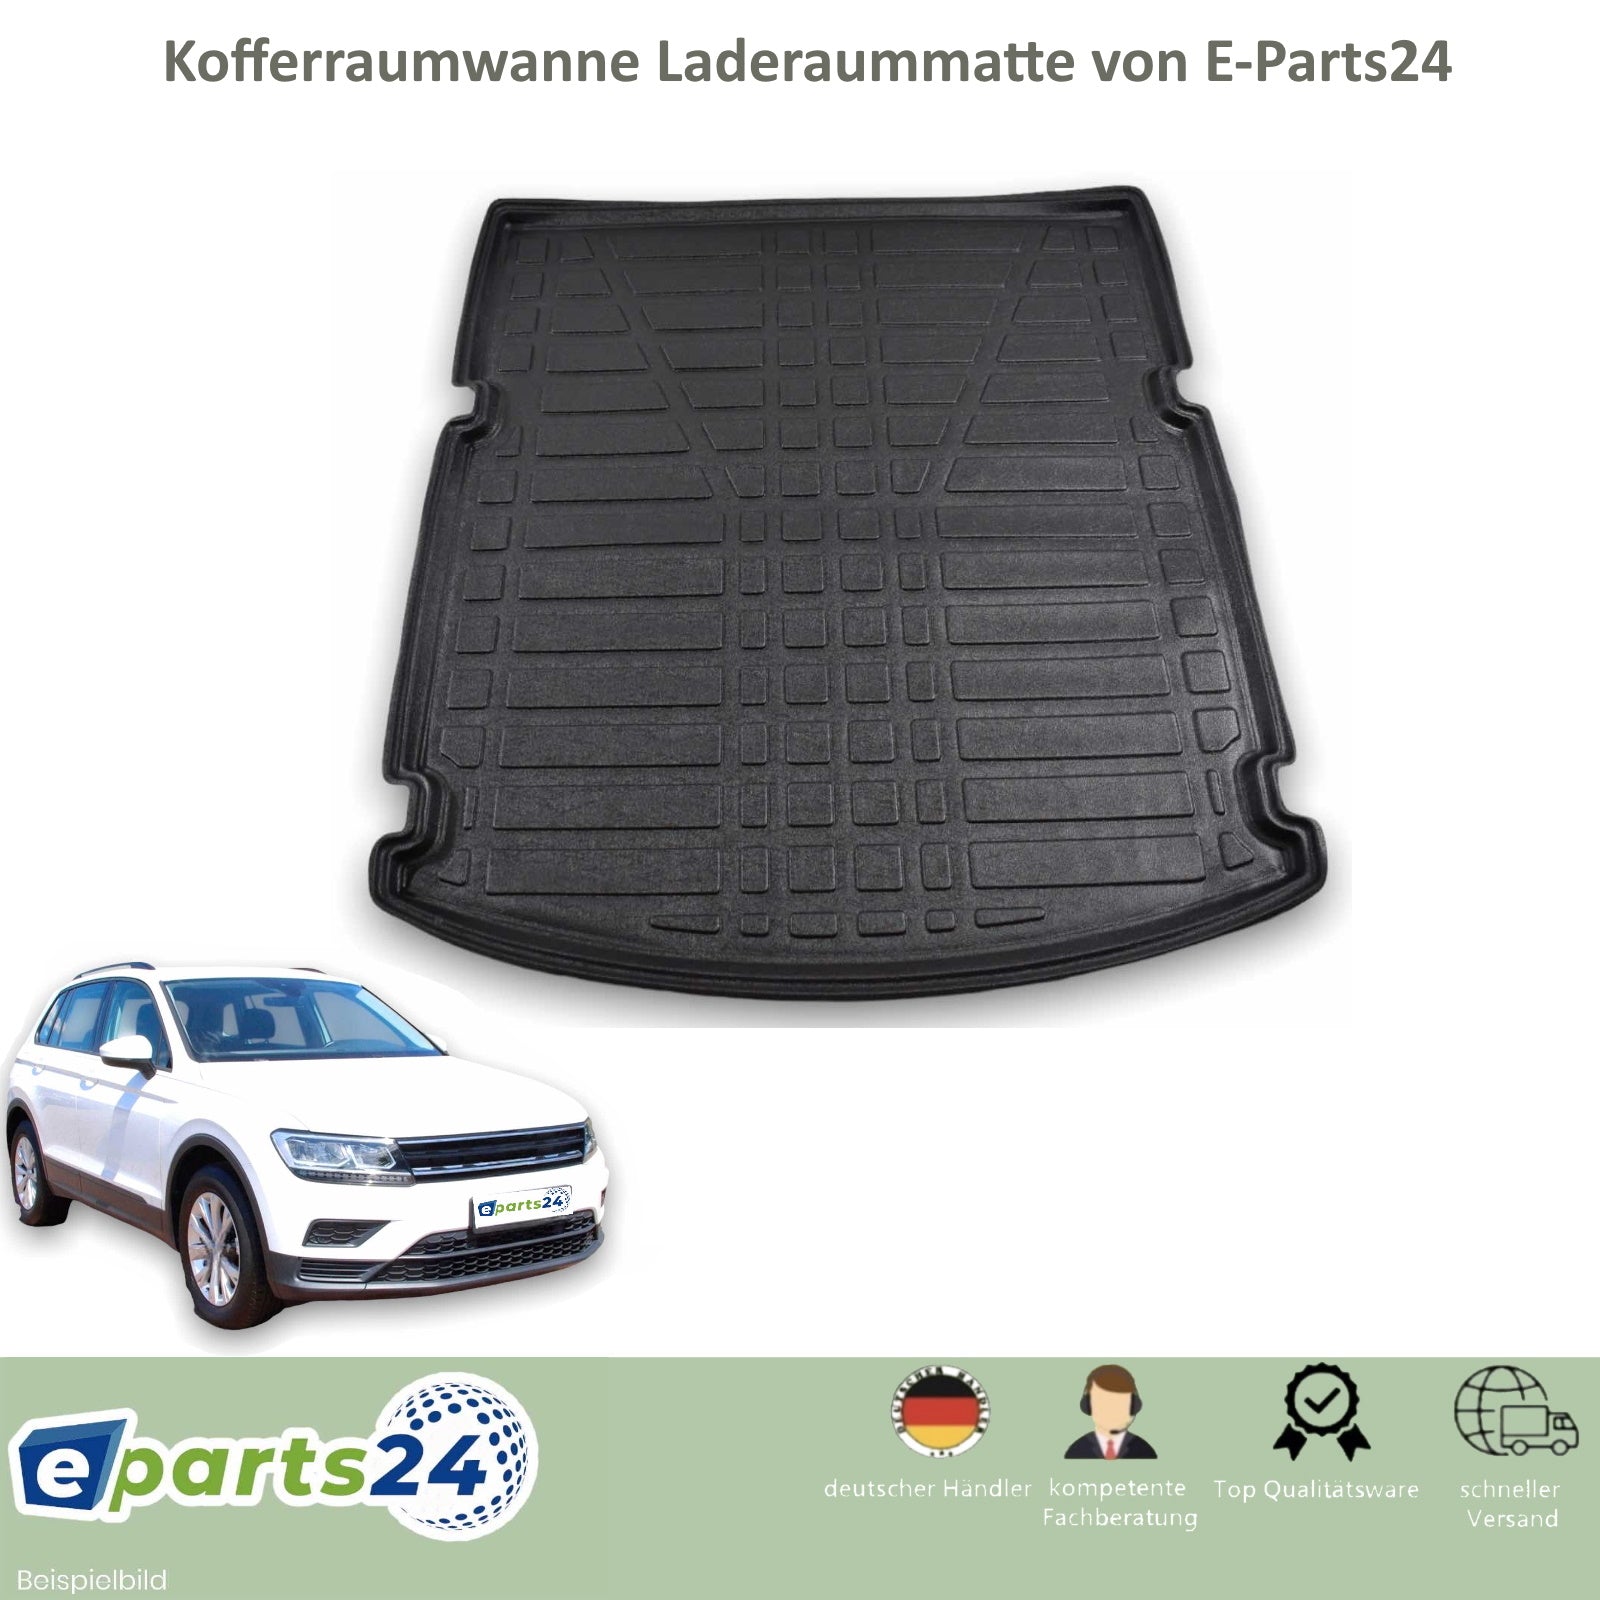 Kofferraumwanne Kofferraummatte Wanne für VW Golf 7 Schrägheck unten 2 –  E-Parts24